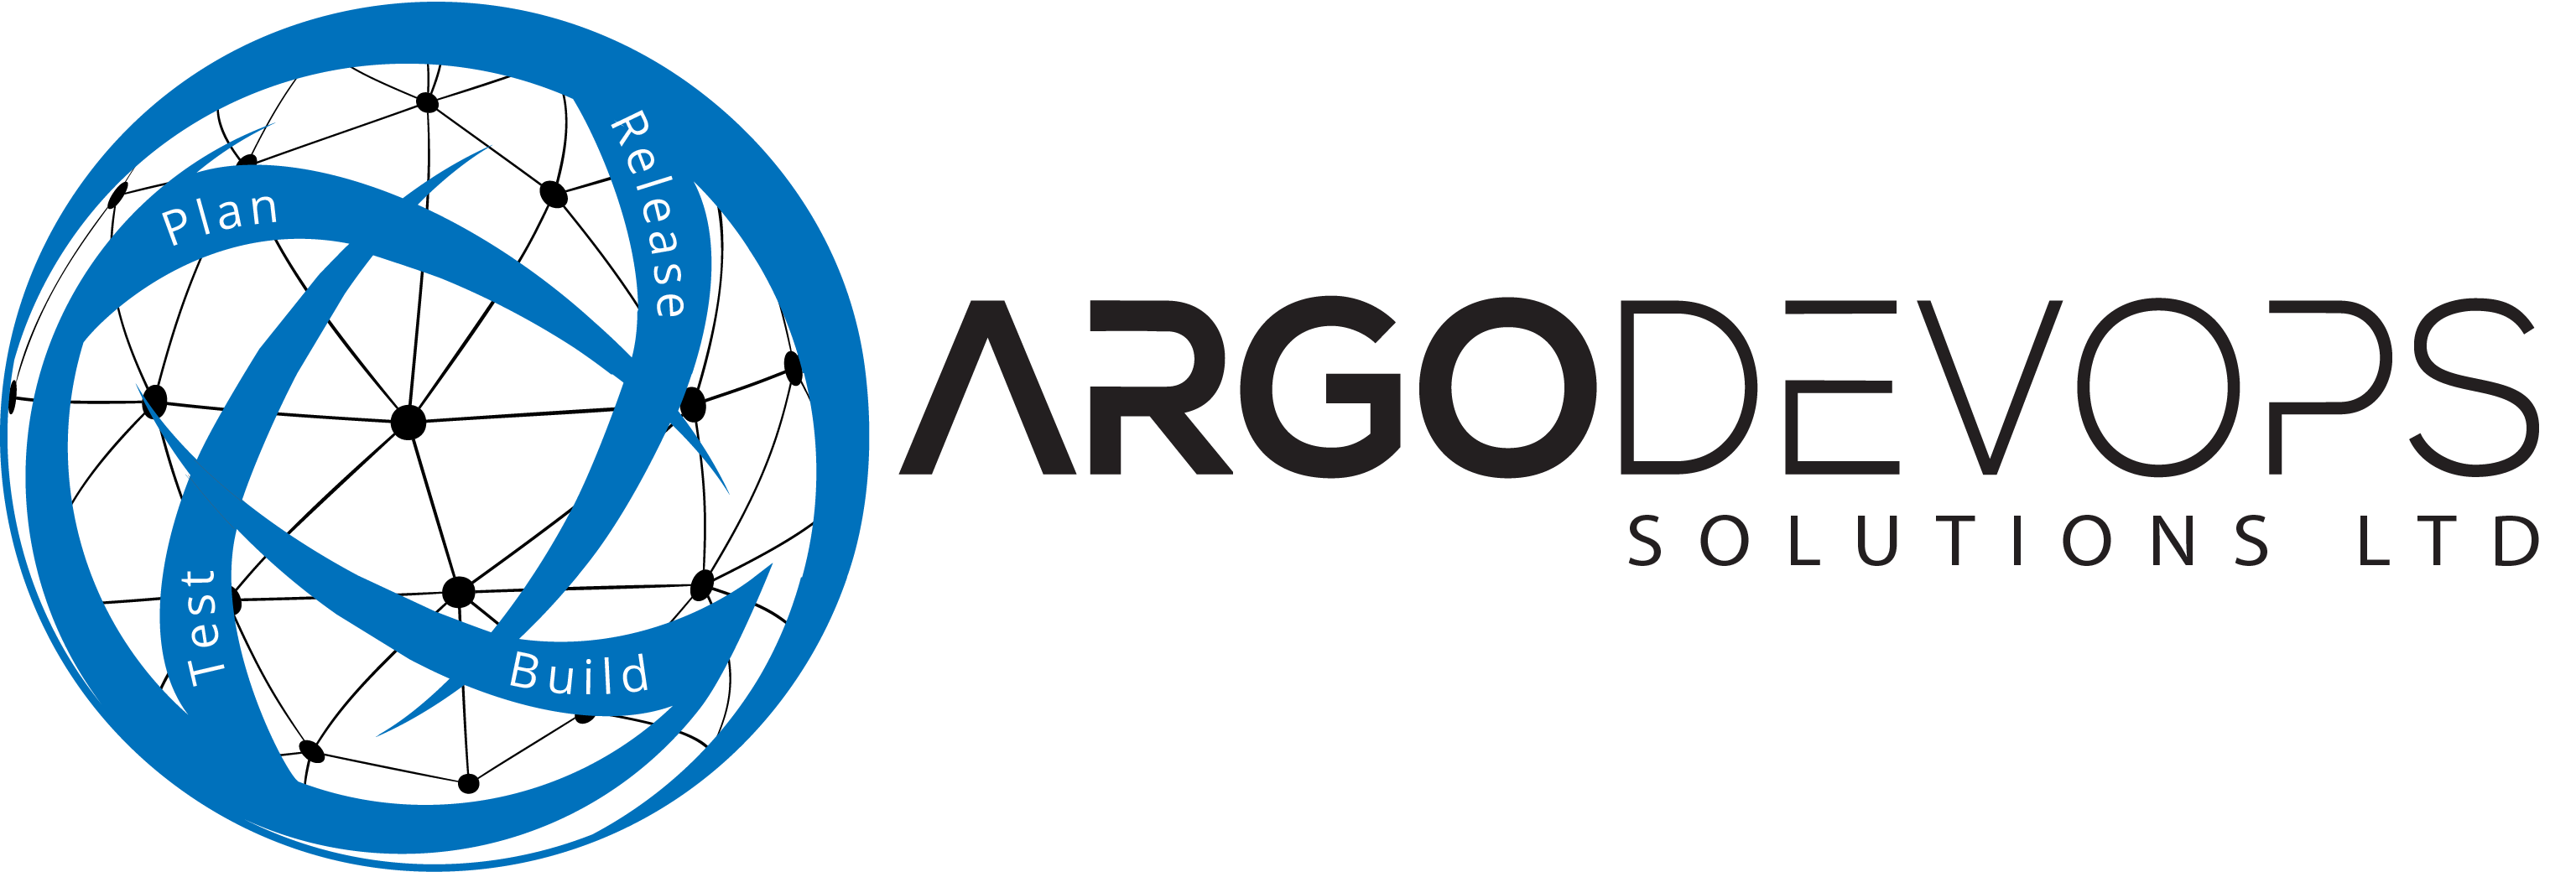 logo for Argo DevOps Solutions Limited